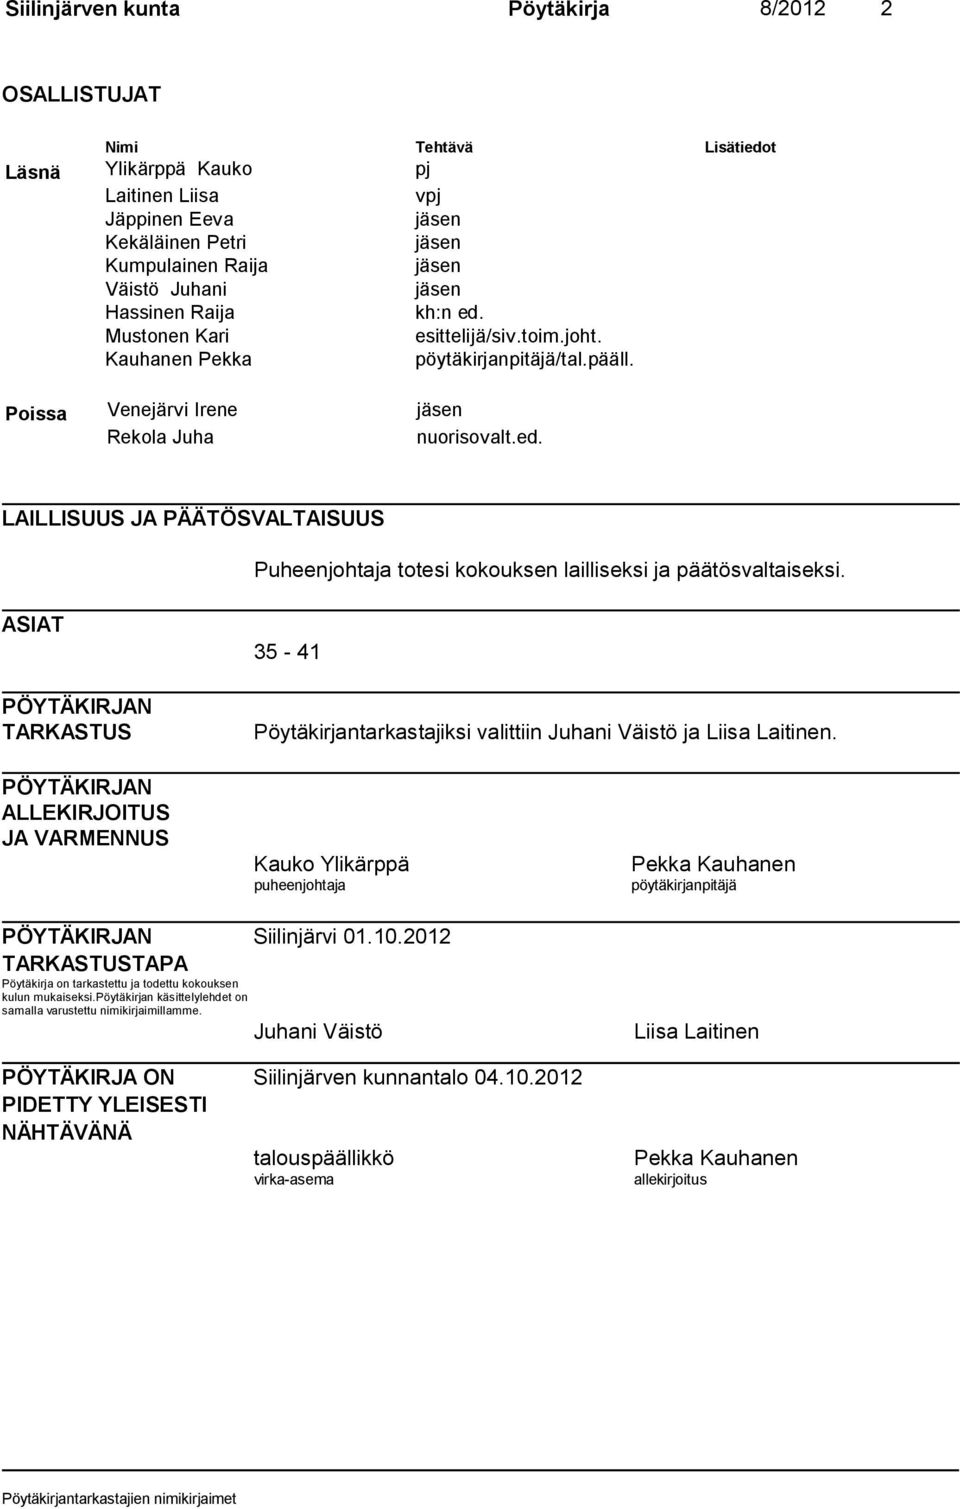 ASIAT PÖYTÄKIRJAN TARKASTUS 35-41 Pöytäkirjantarkastajiksi valittiin Juhani Väistö ja Liisa Laitinen.